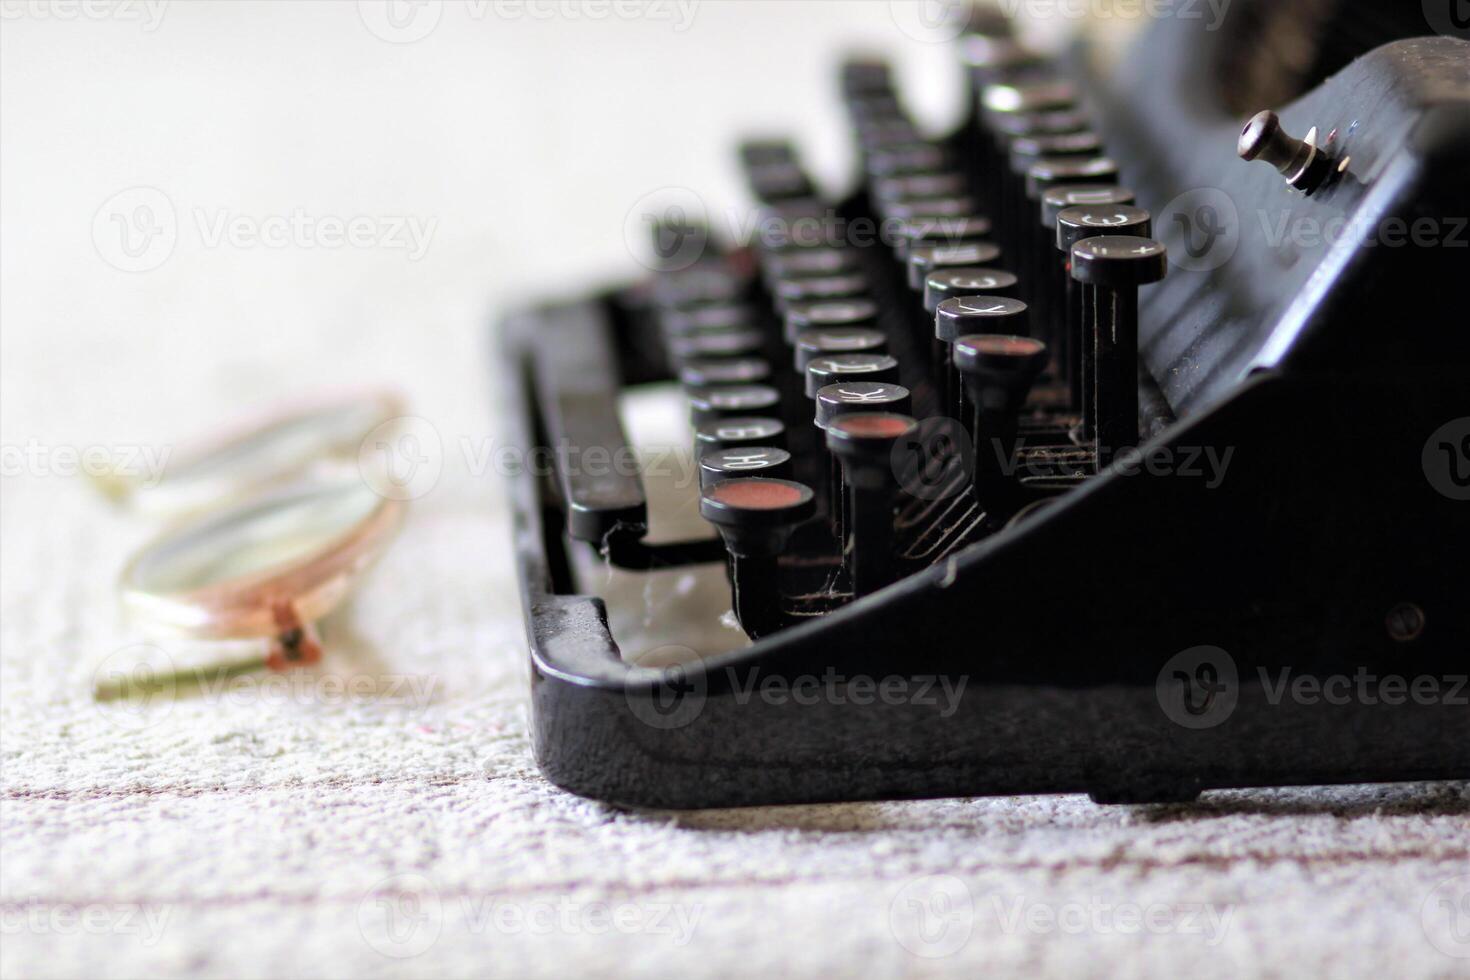 ancien machine à écrire, des lunettes sur lin nappe de table, côté vue proche en haut photo